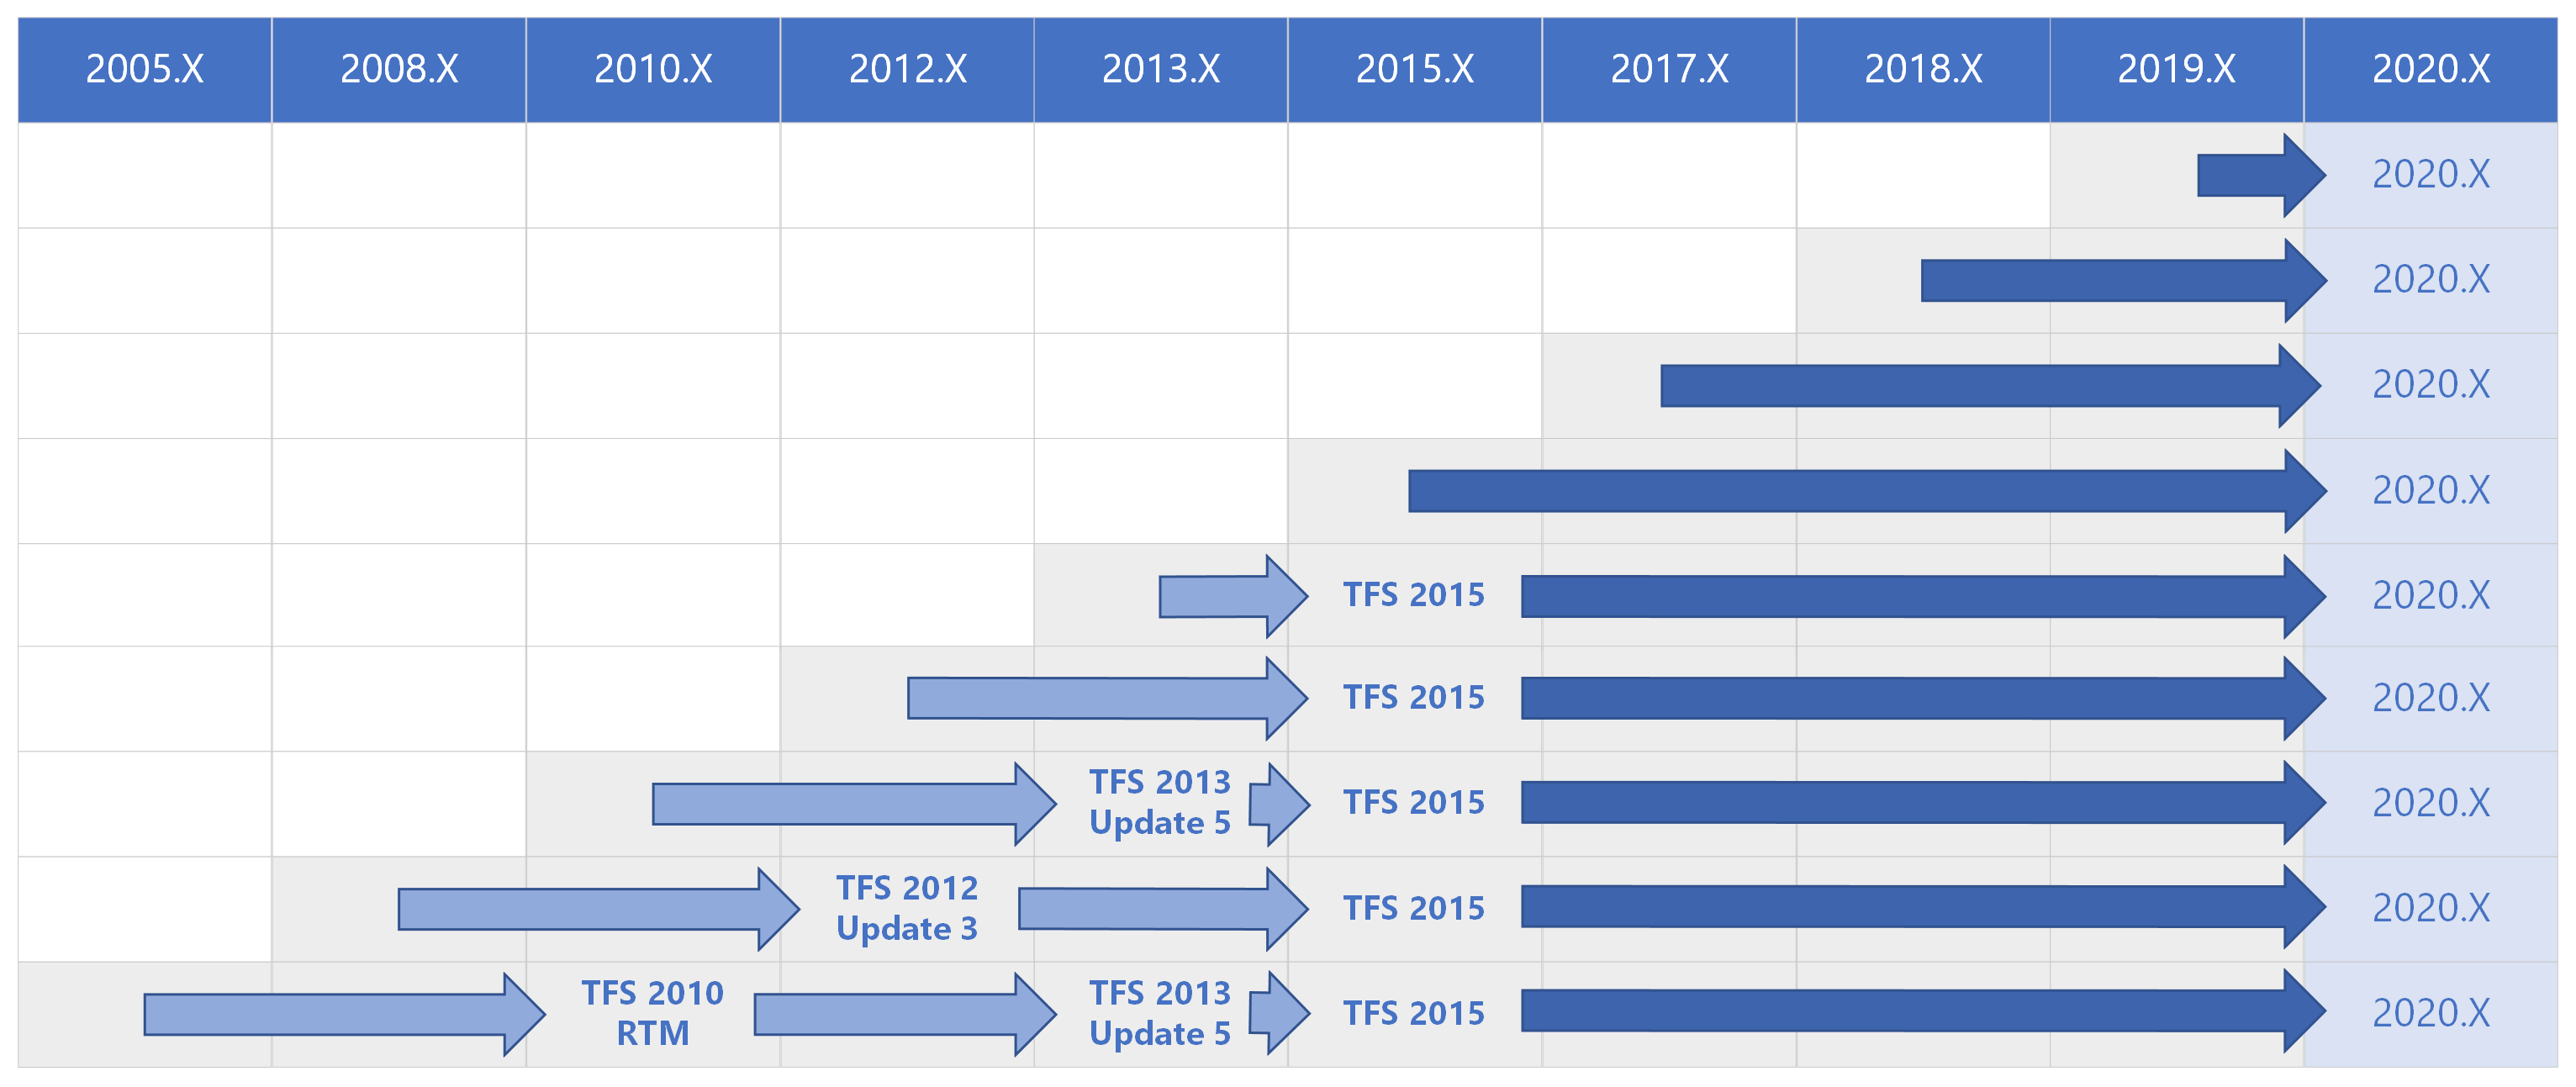 所有舊版的 Azure DevOps 2020 升級路徑矩陣。